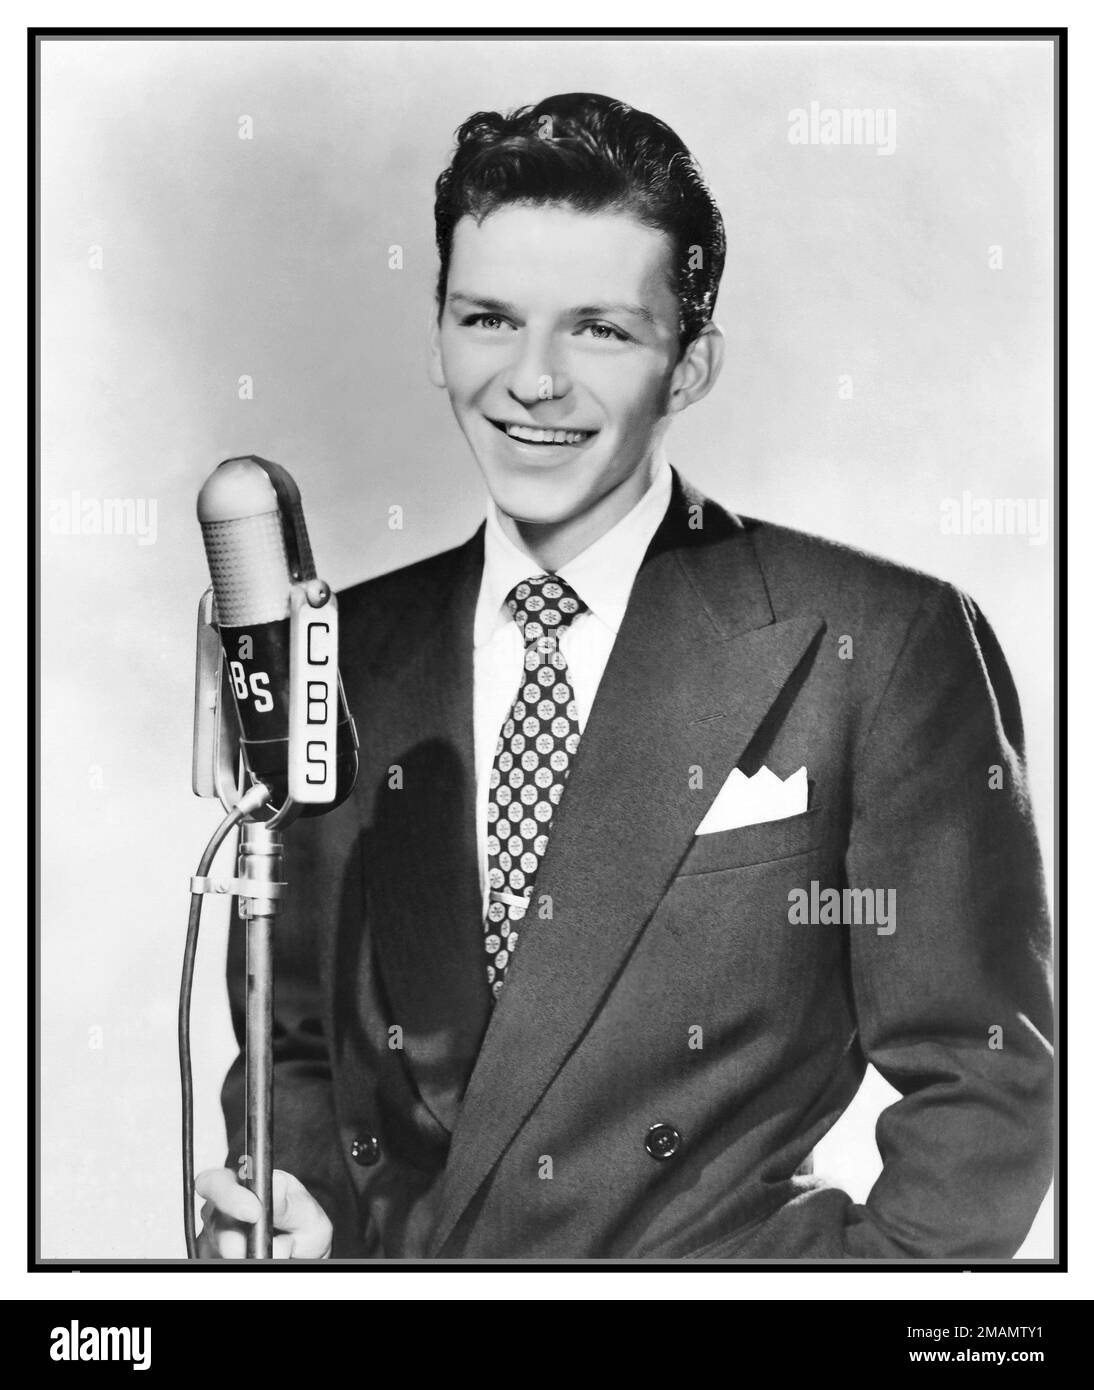 FRANK SINATRA YOUNG 1942 Publicity Studio Porträtfoto von Frank Sinatra im Jahr 1942 mit einem CBS-Mikrofon, herausgegeben, um eine frühe Iteration 1940er der Frank Sinatra Show im CBS Radio zu bewerben. Hollywood, USA Stockfoto